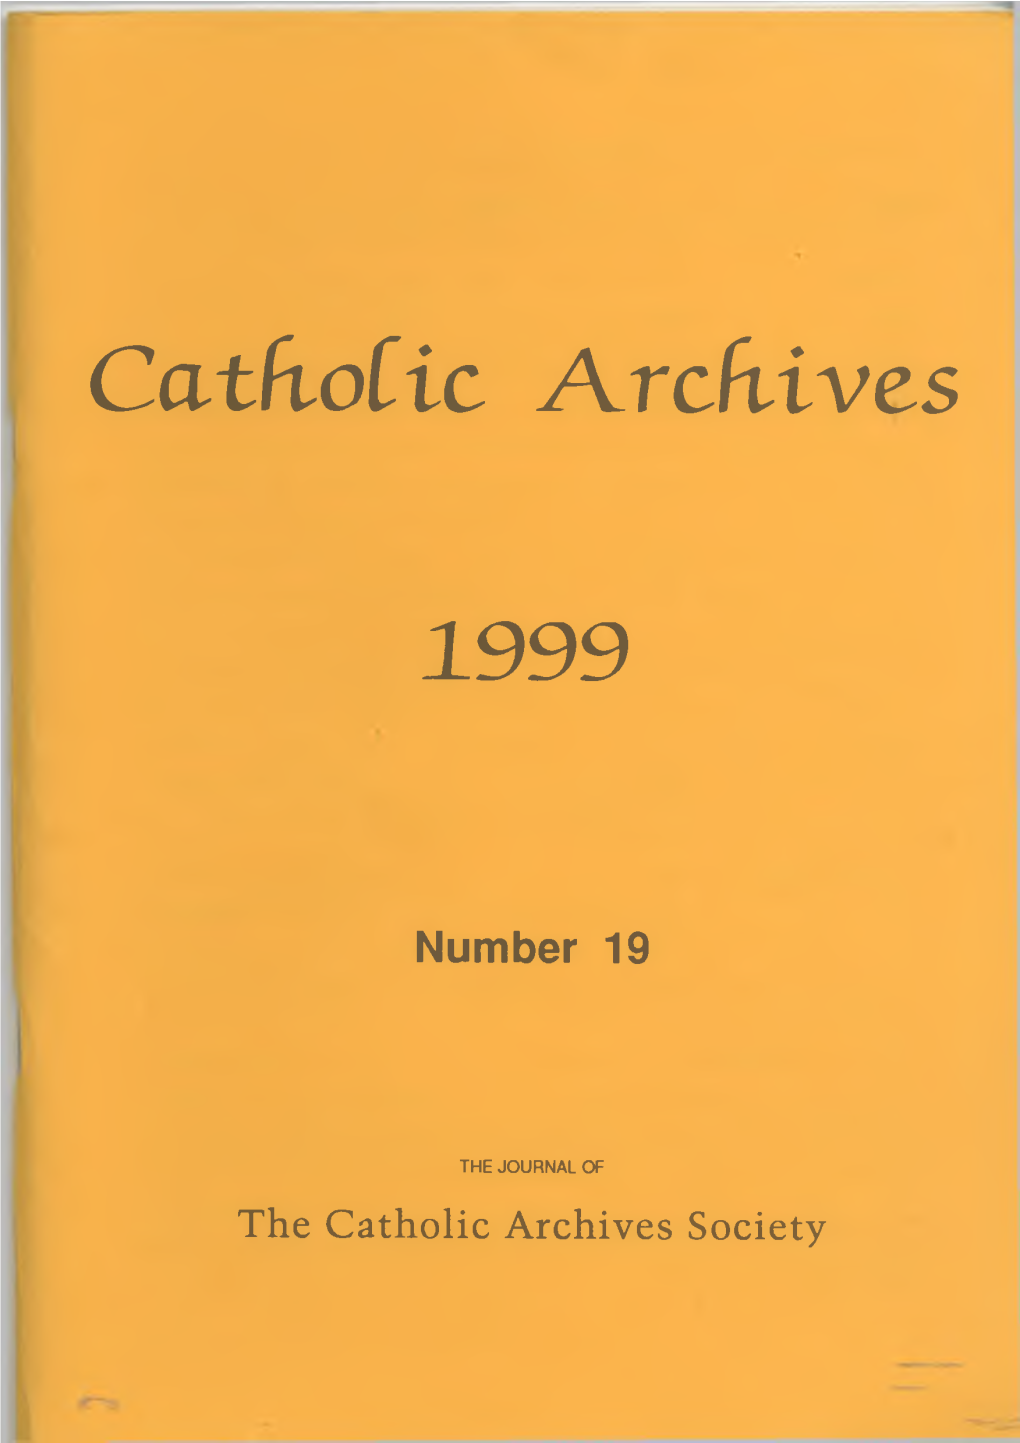 Catholic Archives 1999